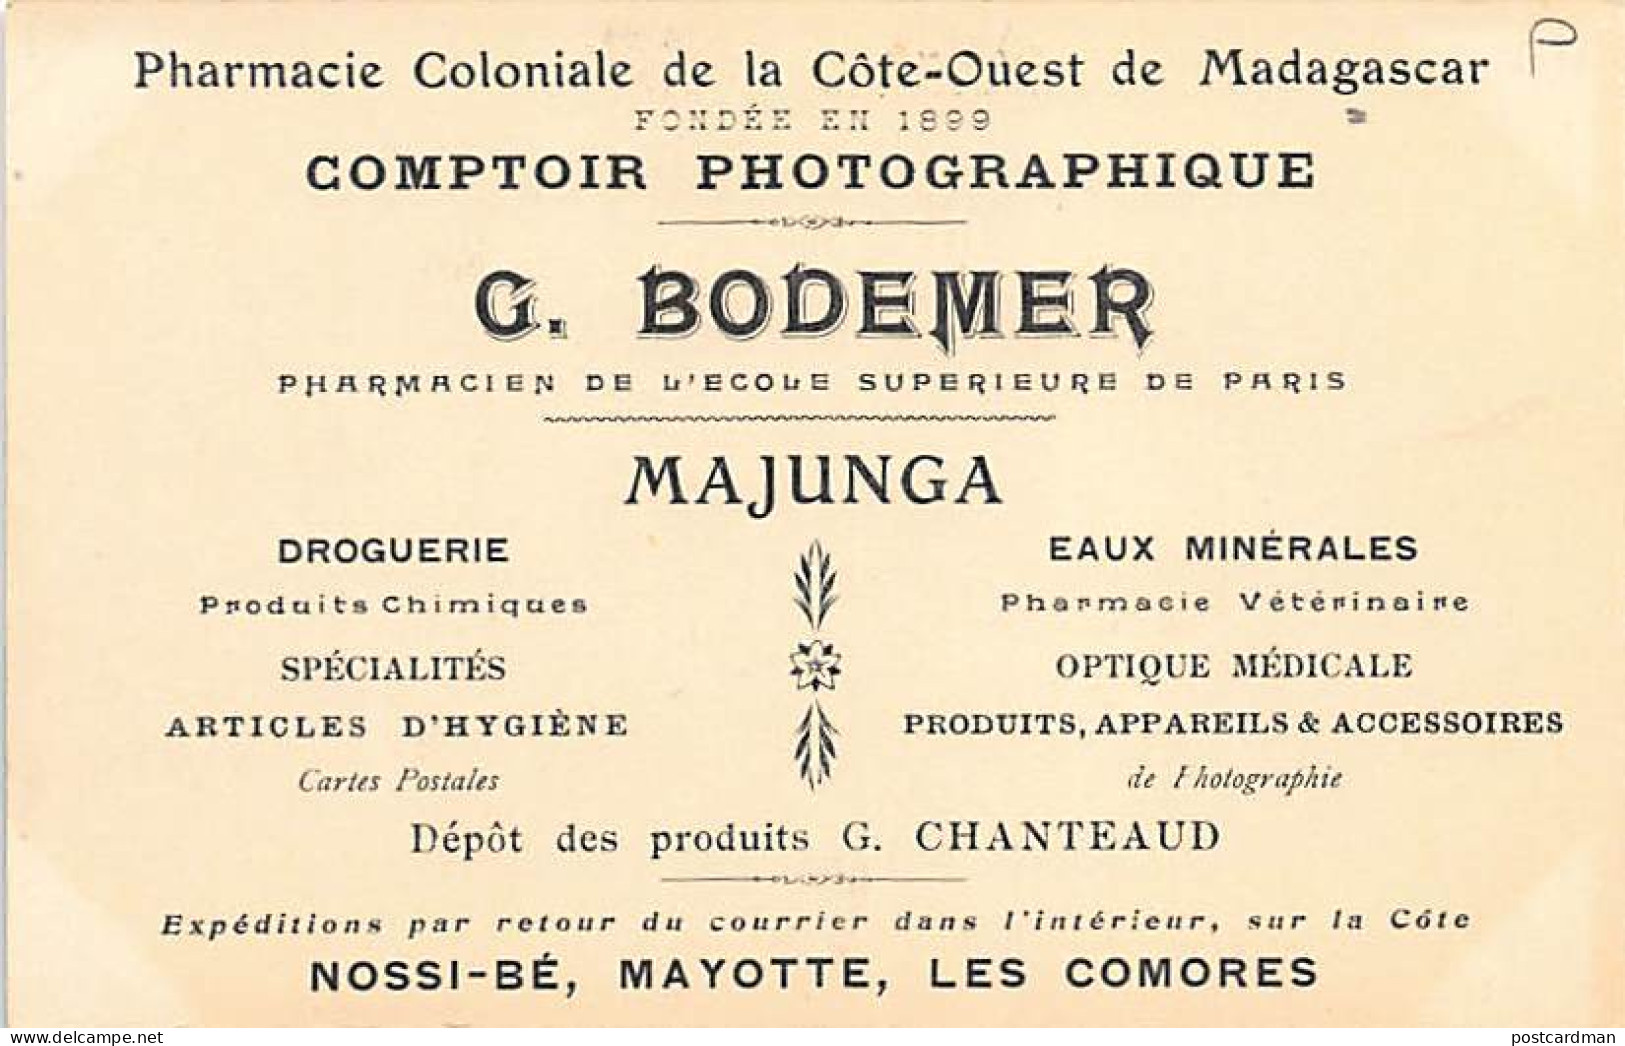 MAJUNGA - Magasin De L'éditeur G. Bodemer, Comptoir Photographique Et Pharmacie Coloniale. - Madagaskar